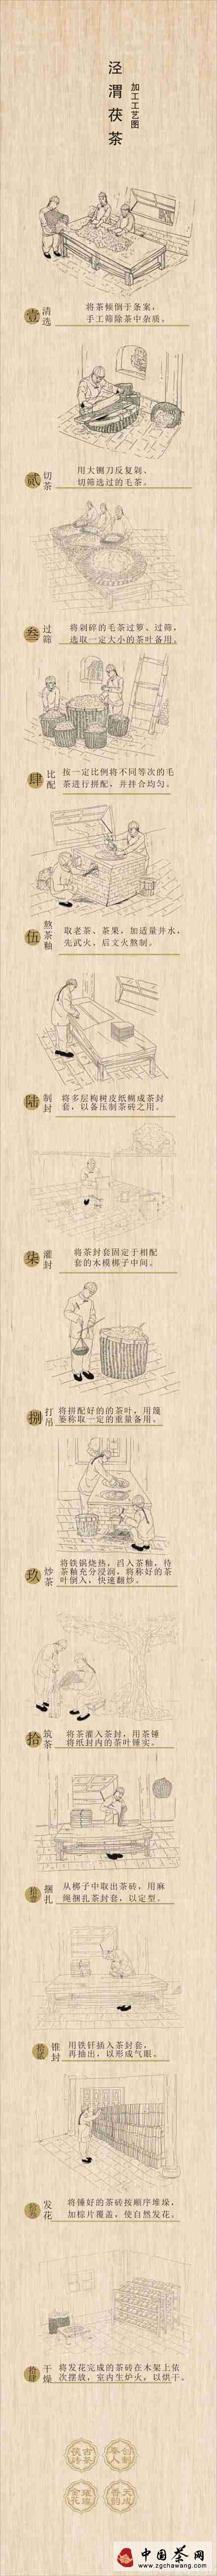 泾渭茯茶工艺图